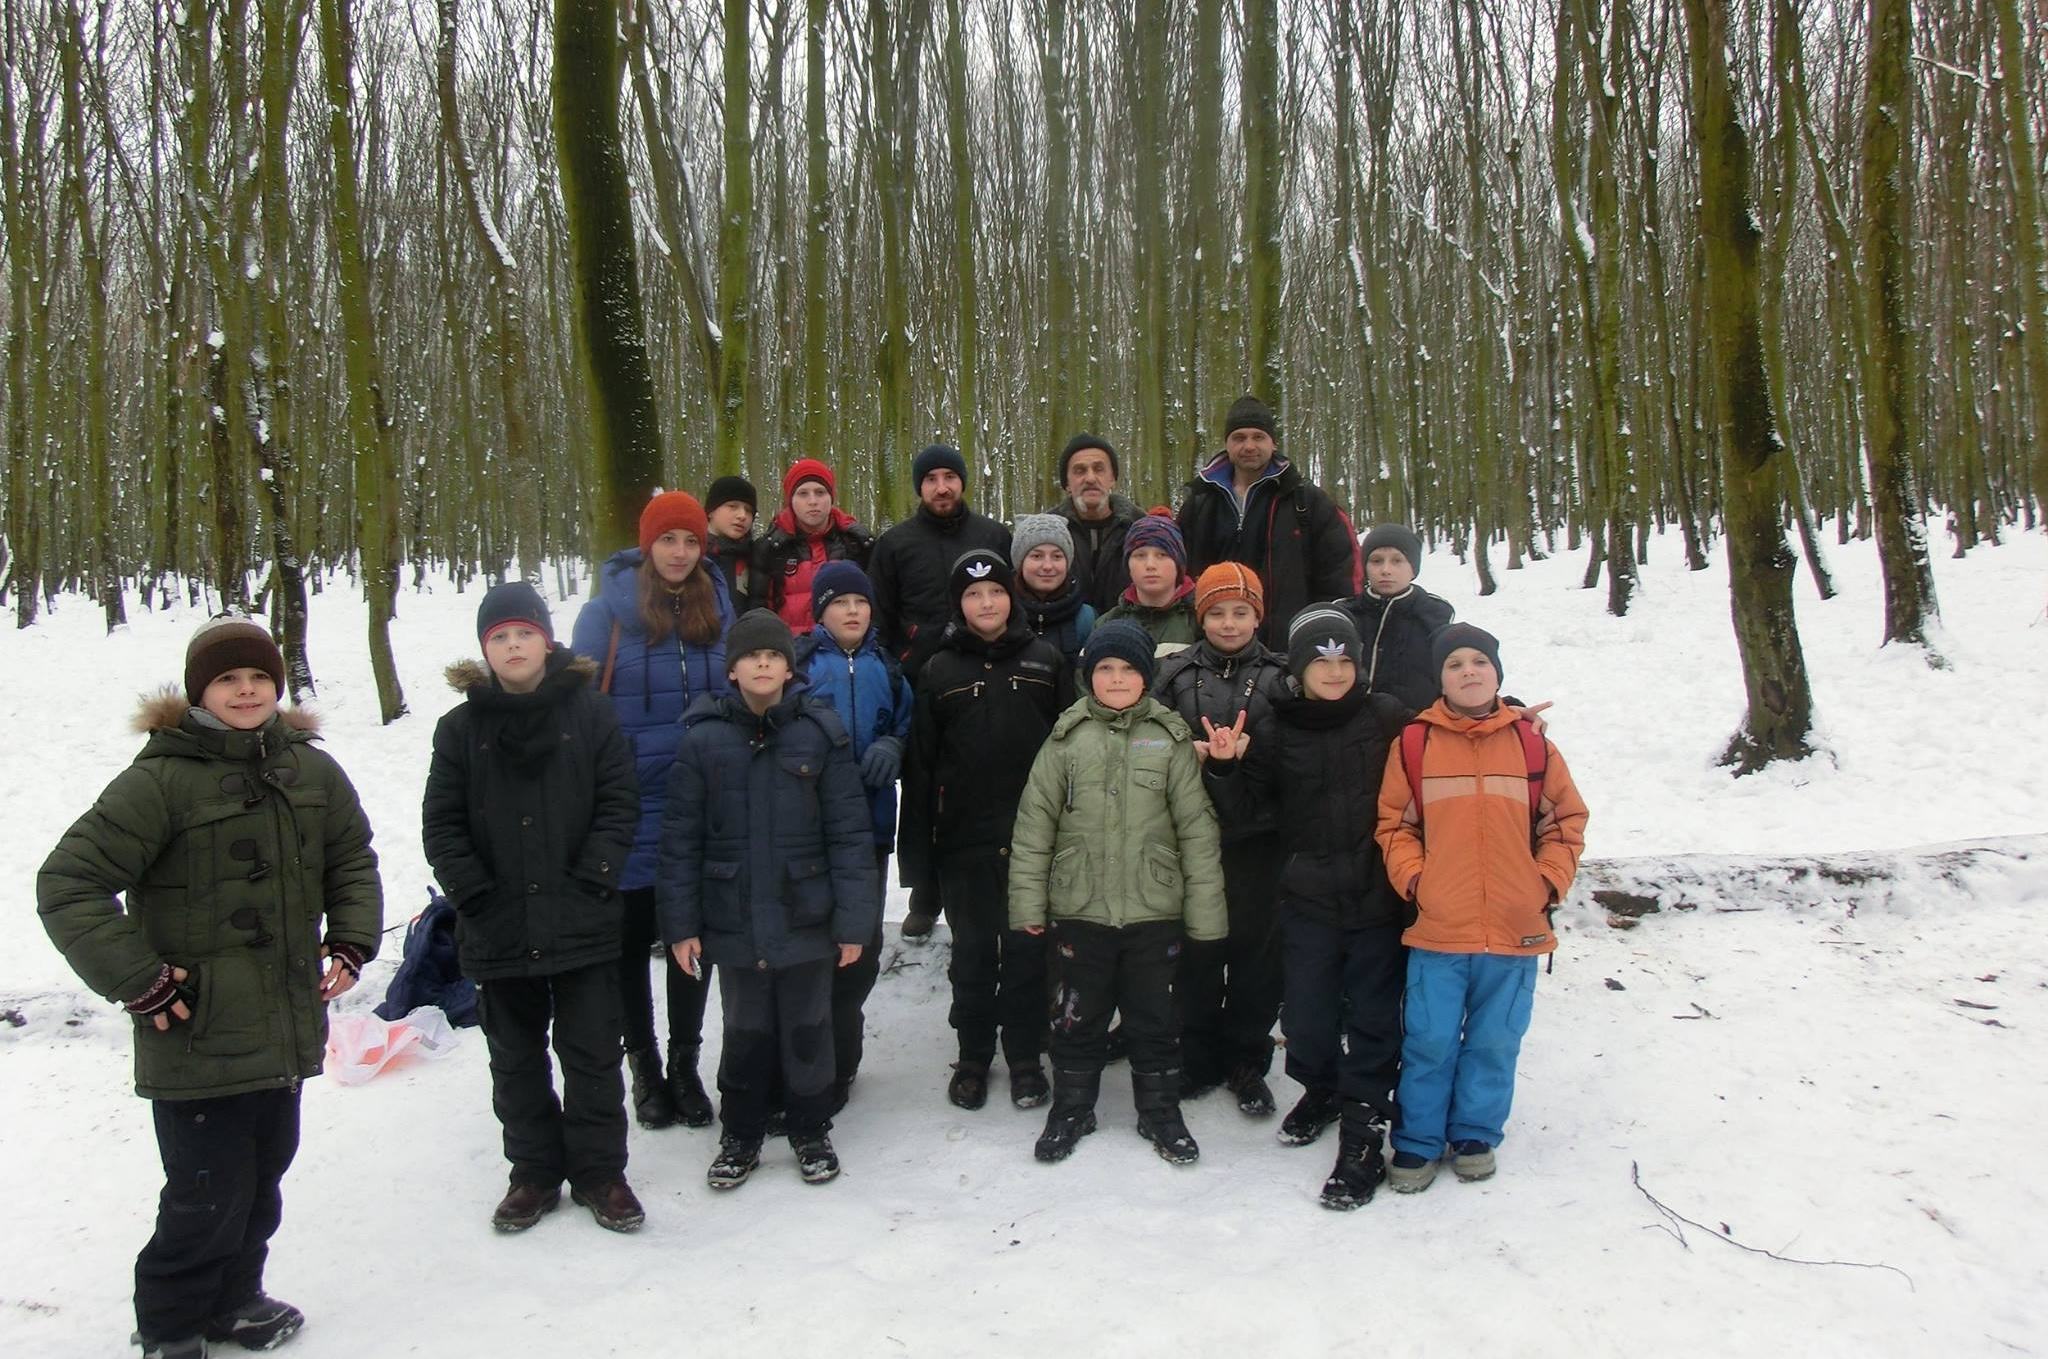 *** Хмельницькі гопаківці - похід до зимового лісу з батьками та тренерами - День Соборності України 22 січня 2017 року ***